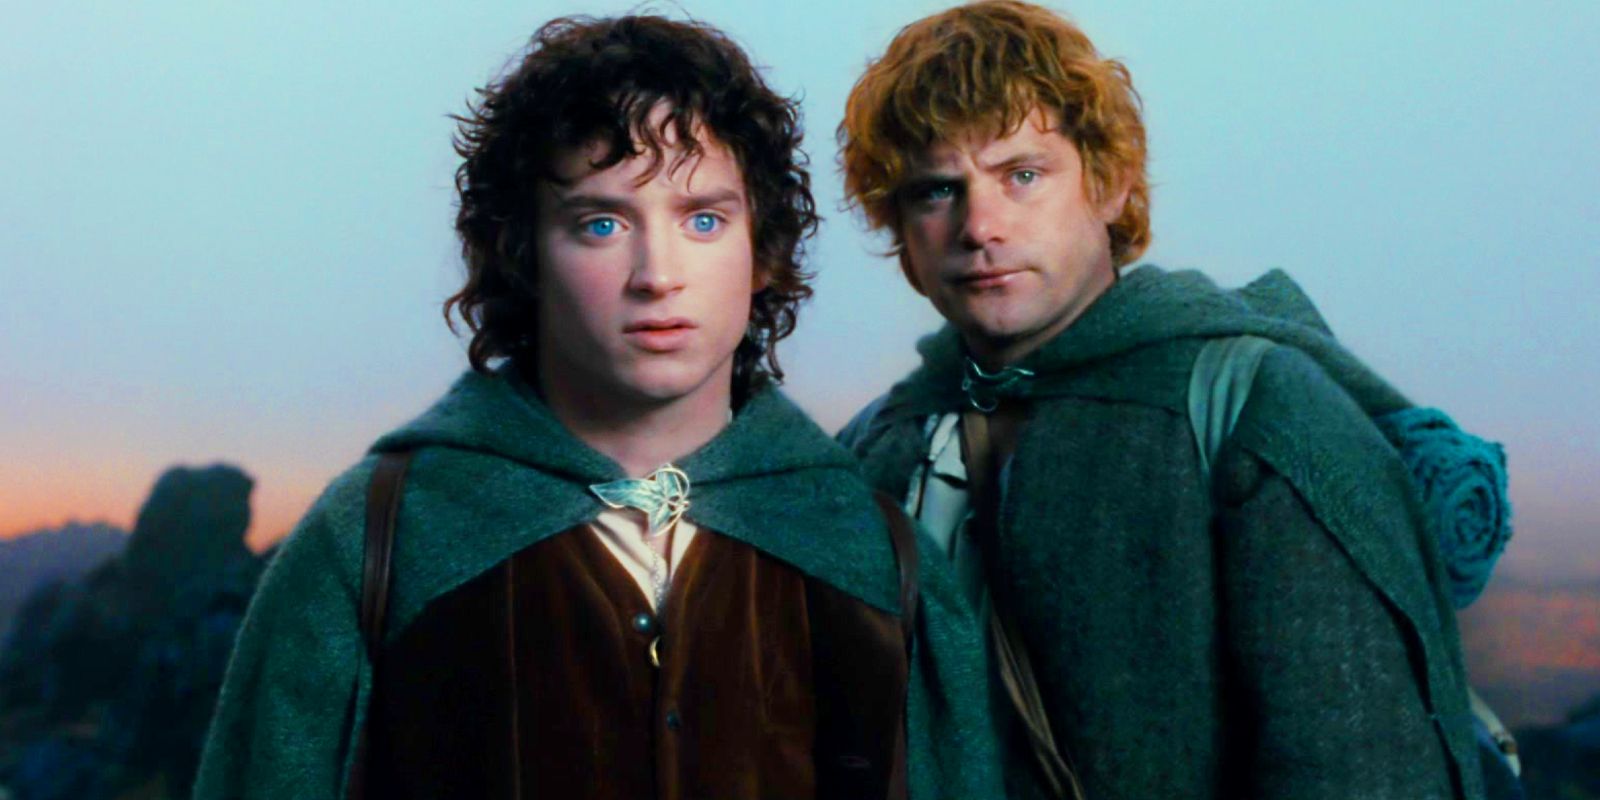 Elijah Wood jako Frodo i Sean Astin jako Sam we „Władcy Pierścieni” Drużyna Pierścienia